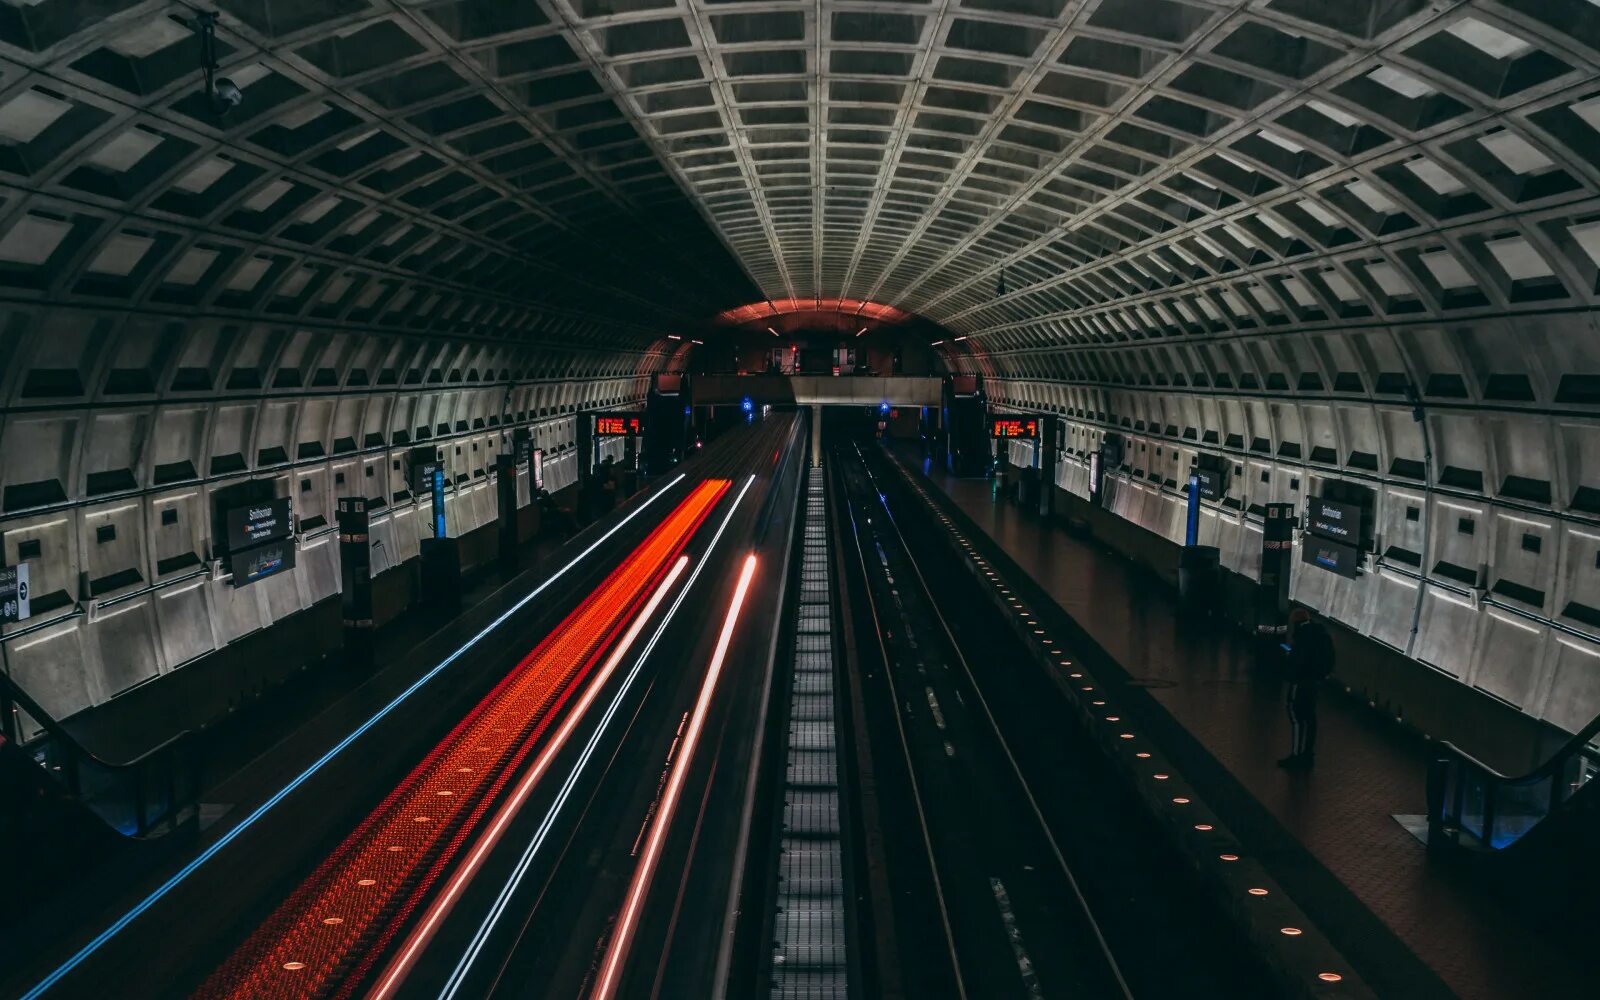 Станция вокзал Вашингтонского метрополитена. Тоннель метро. Поезд в тоннеле. Станция андеграунд.